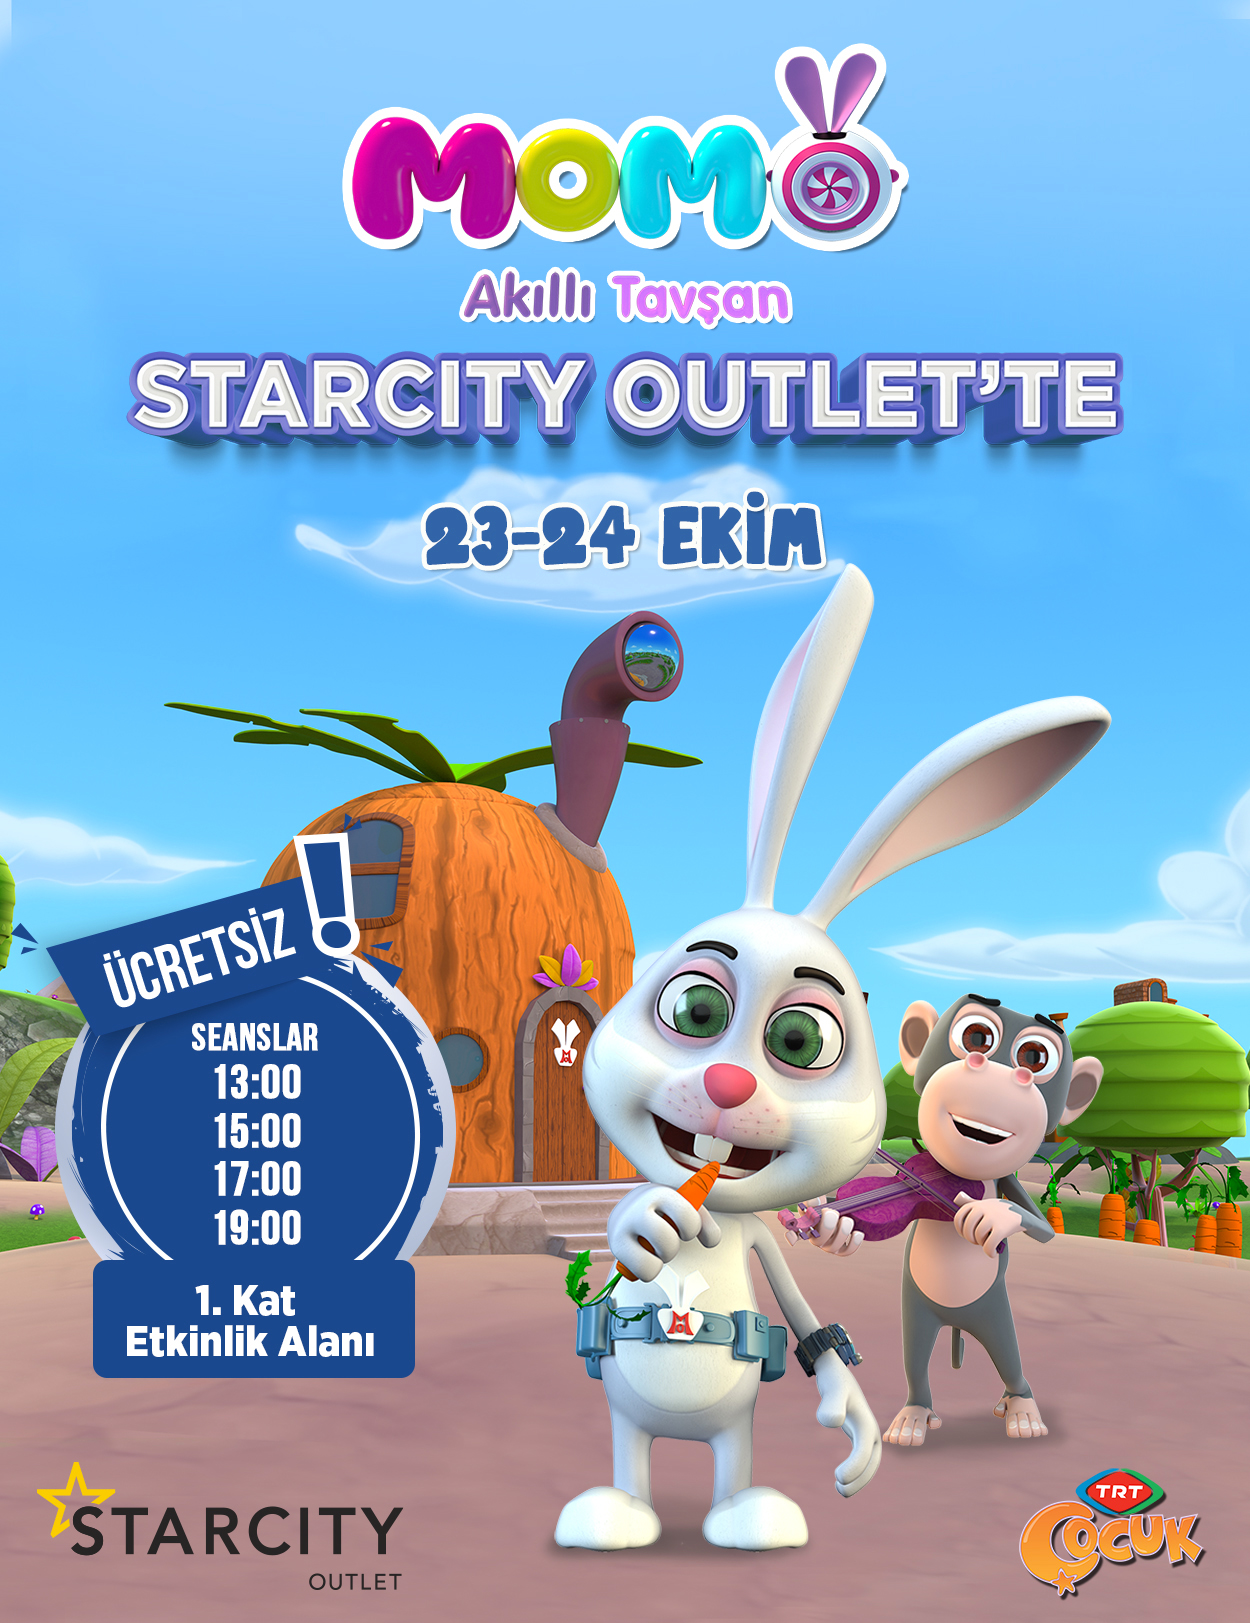 Akıllı Tavşan Momo Starcity Outlet’e Geliyor !